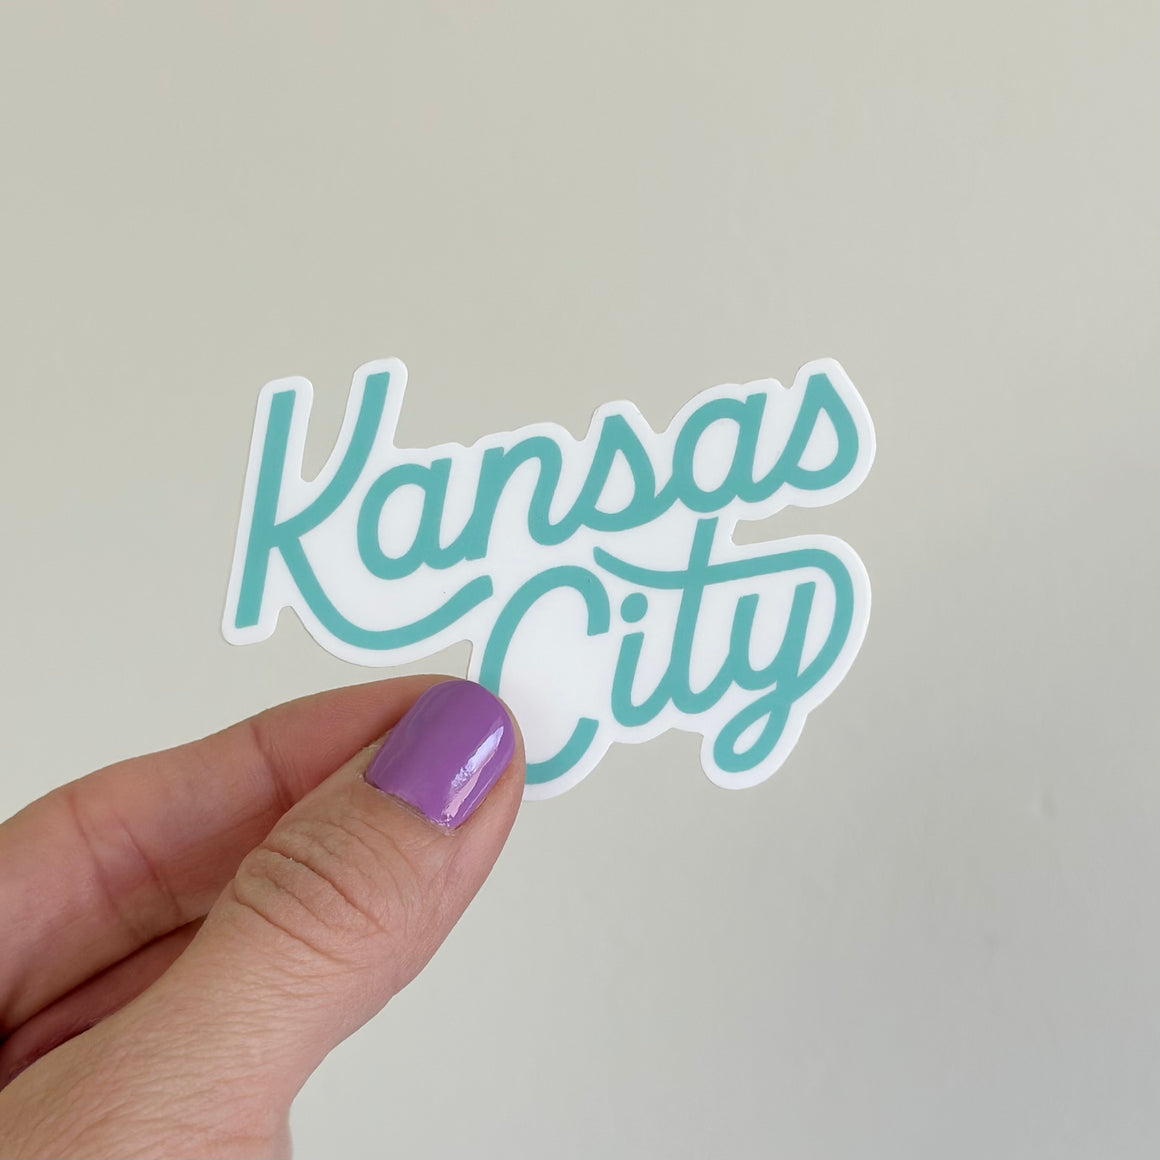 Kansas City Teal Sticker